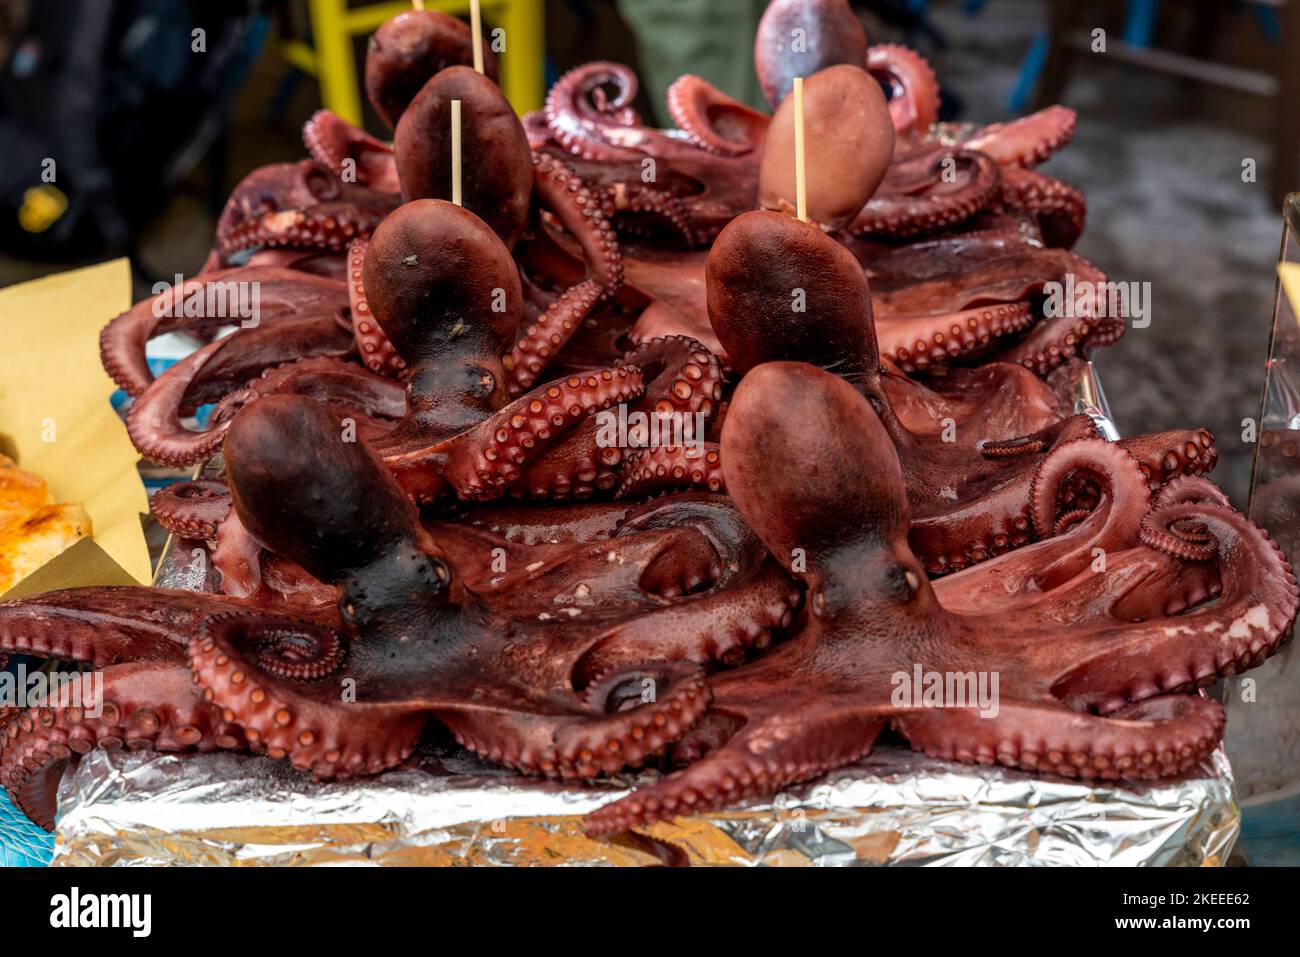 Tintenfisch (Octopus) zum Verkauf auf dem Capo Markt (Mercado del Capo), Palermo, Sizilien, Italien. Stockfoto